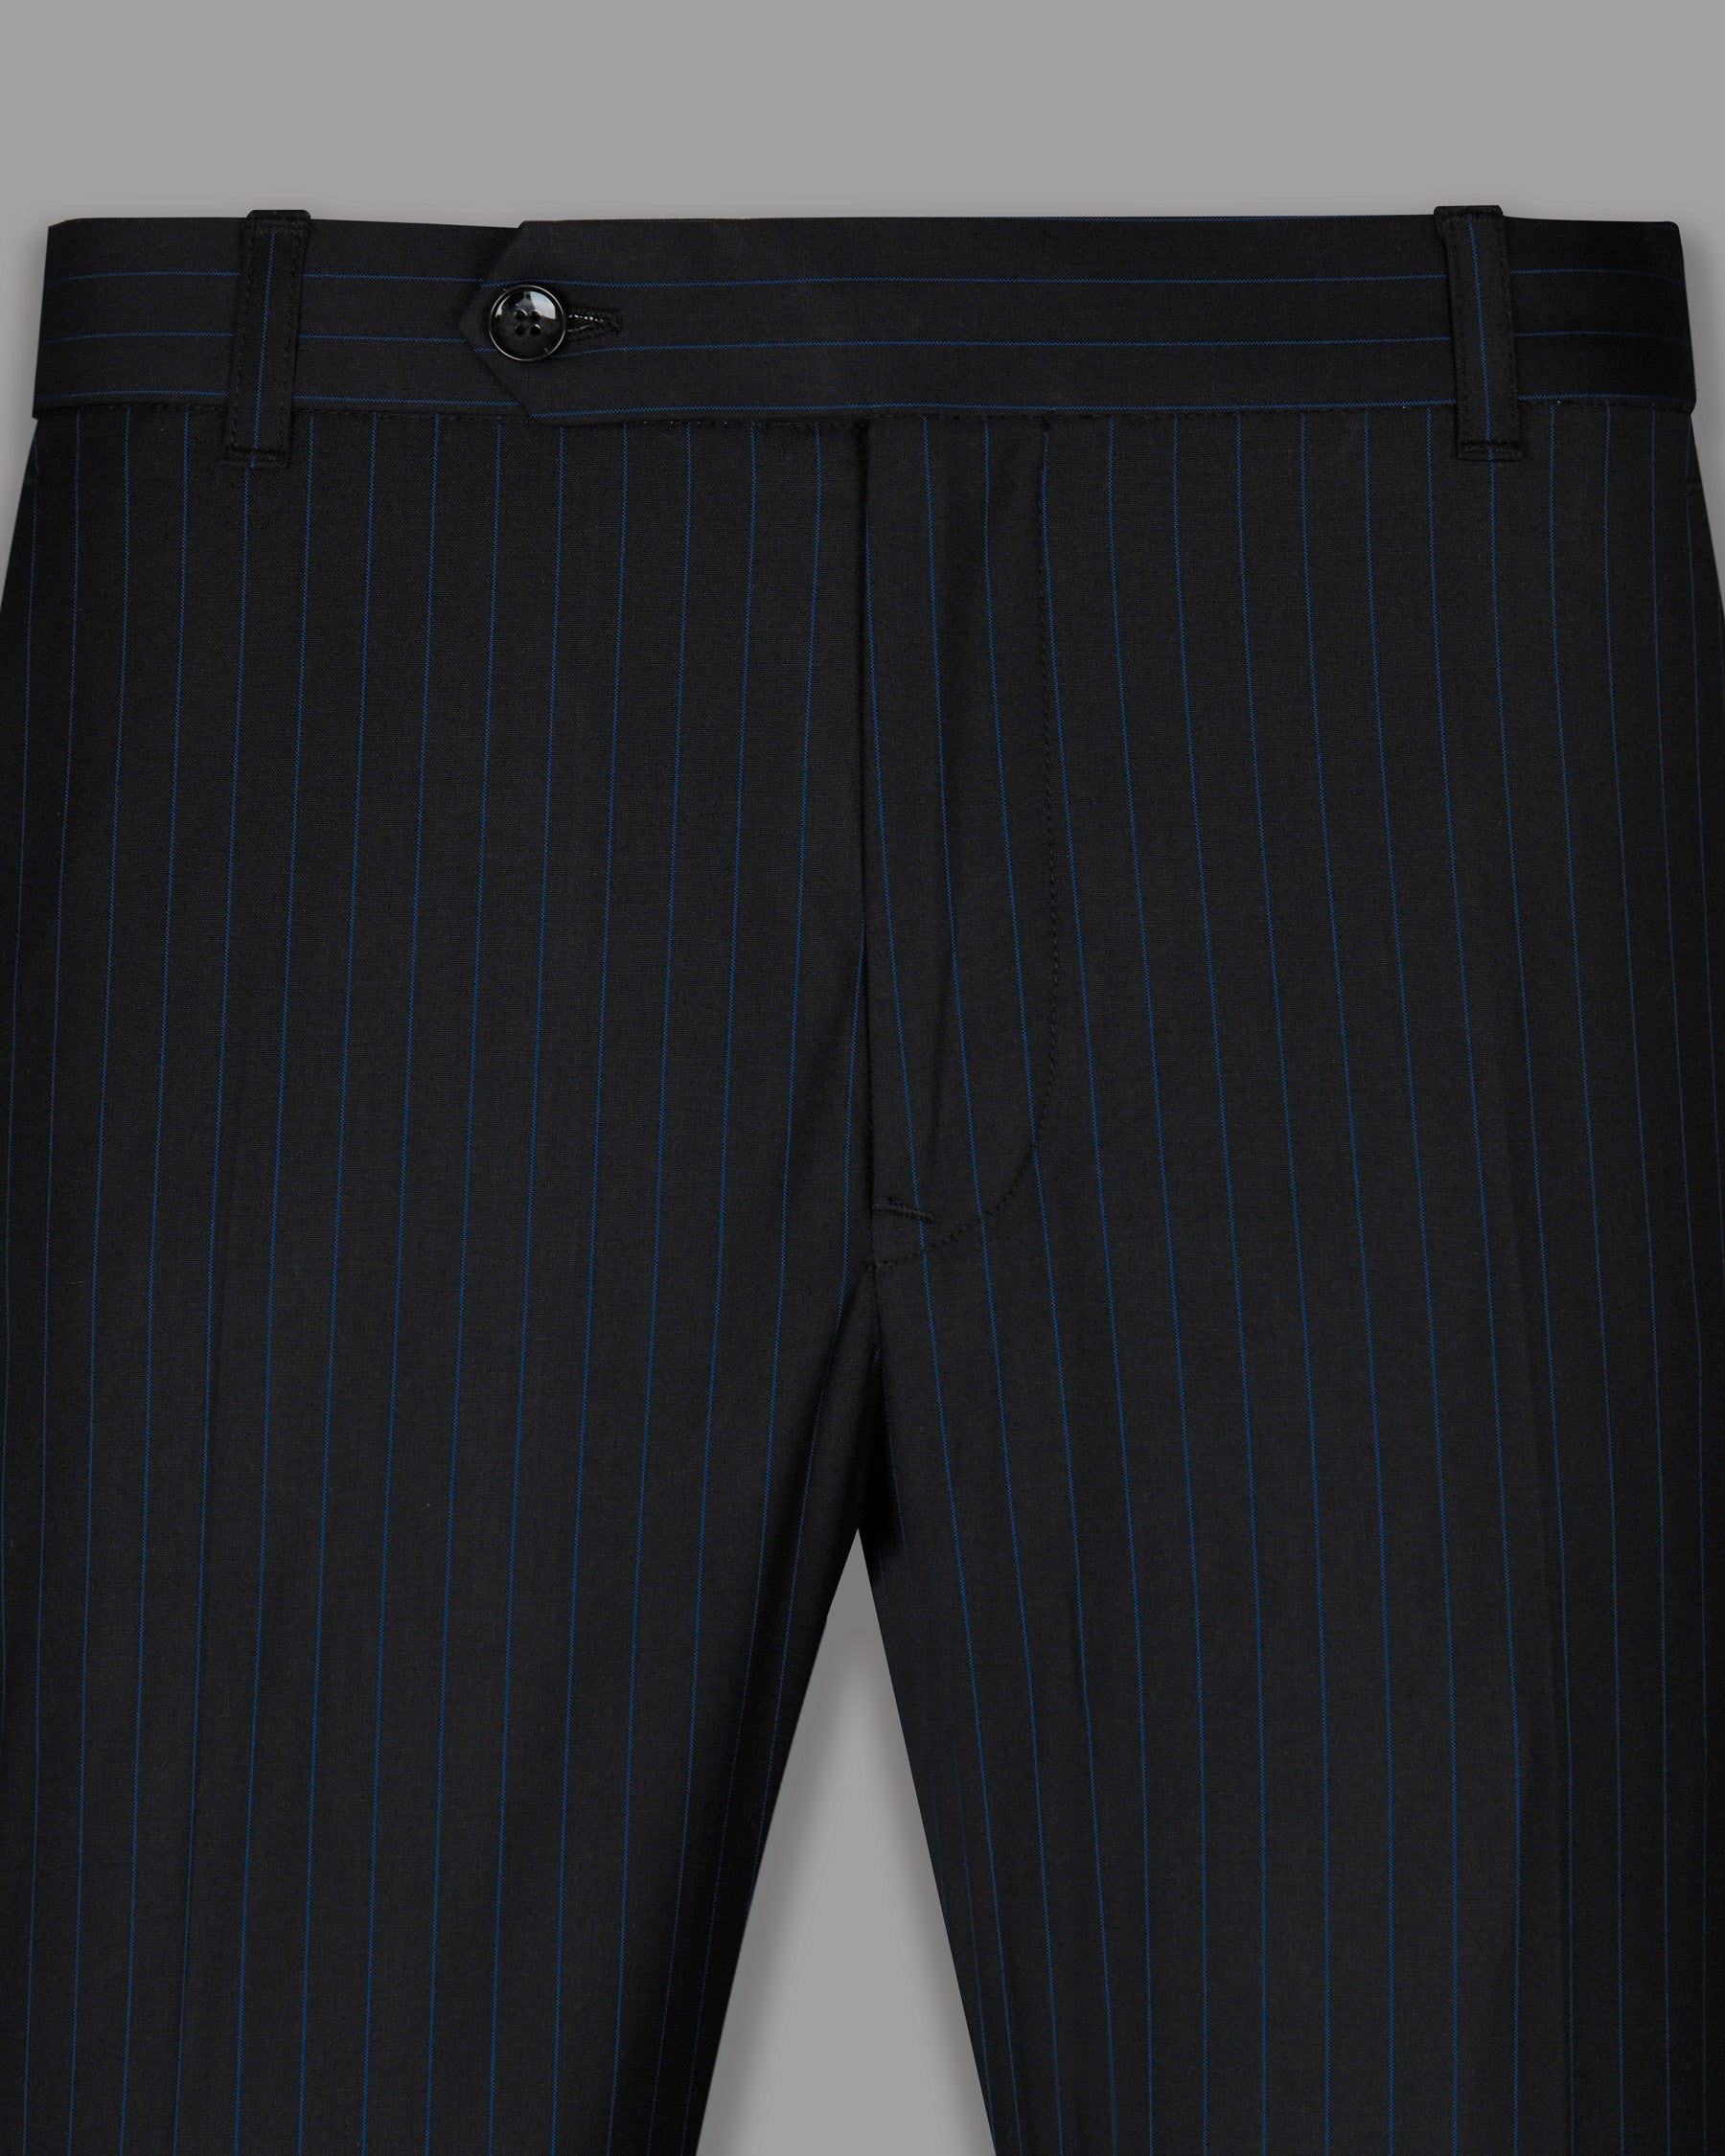 jade Black Striped Wool Blend Pant T768-34, T768-36, T768-38, T768-40, T768-44, T768-28, T768-30, T768-42, T768-32